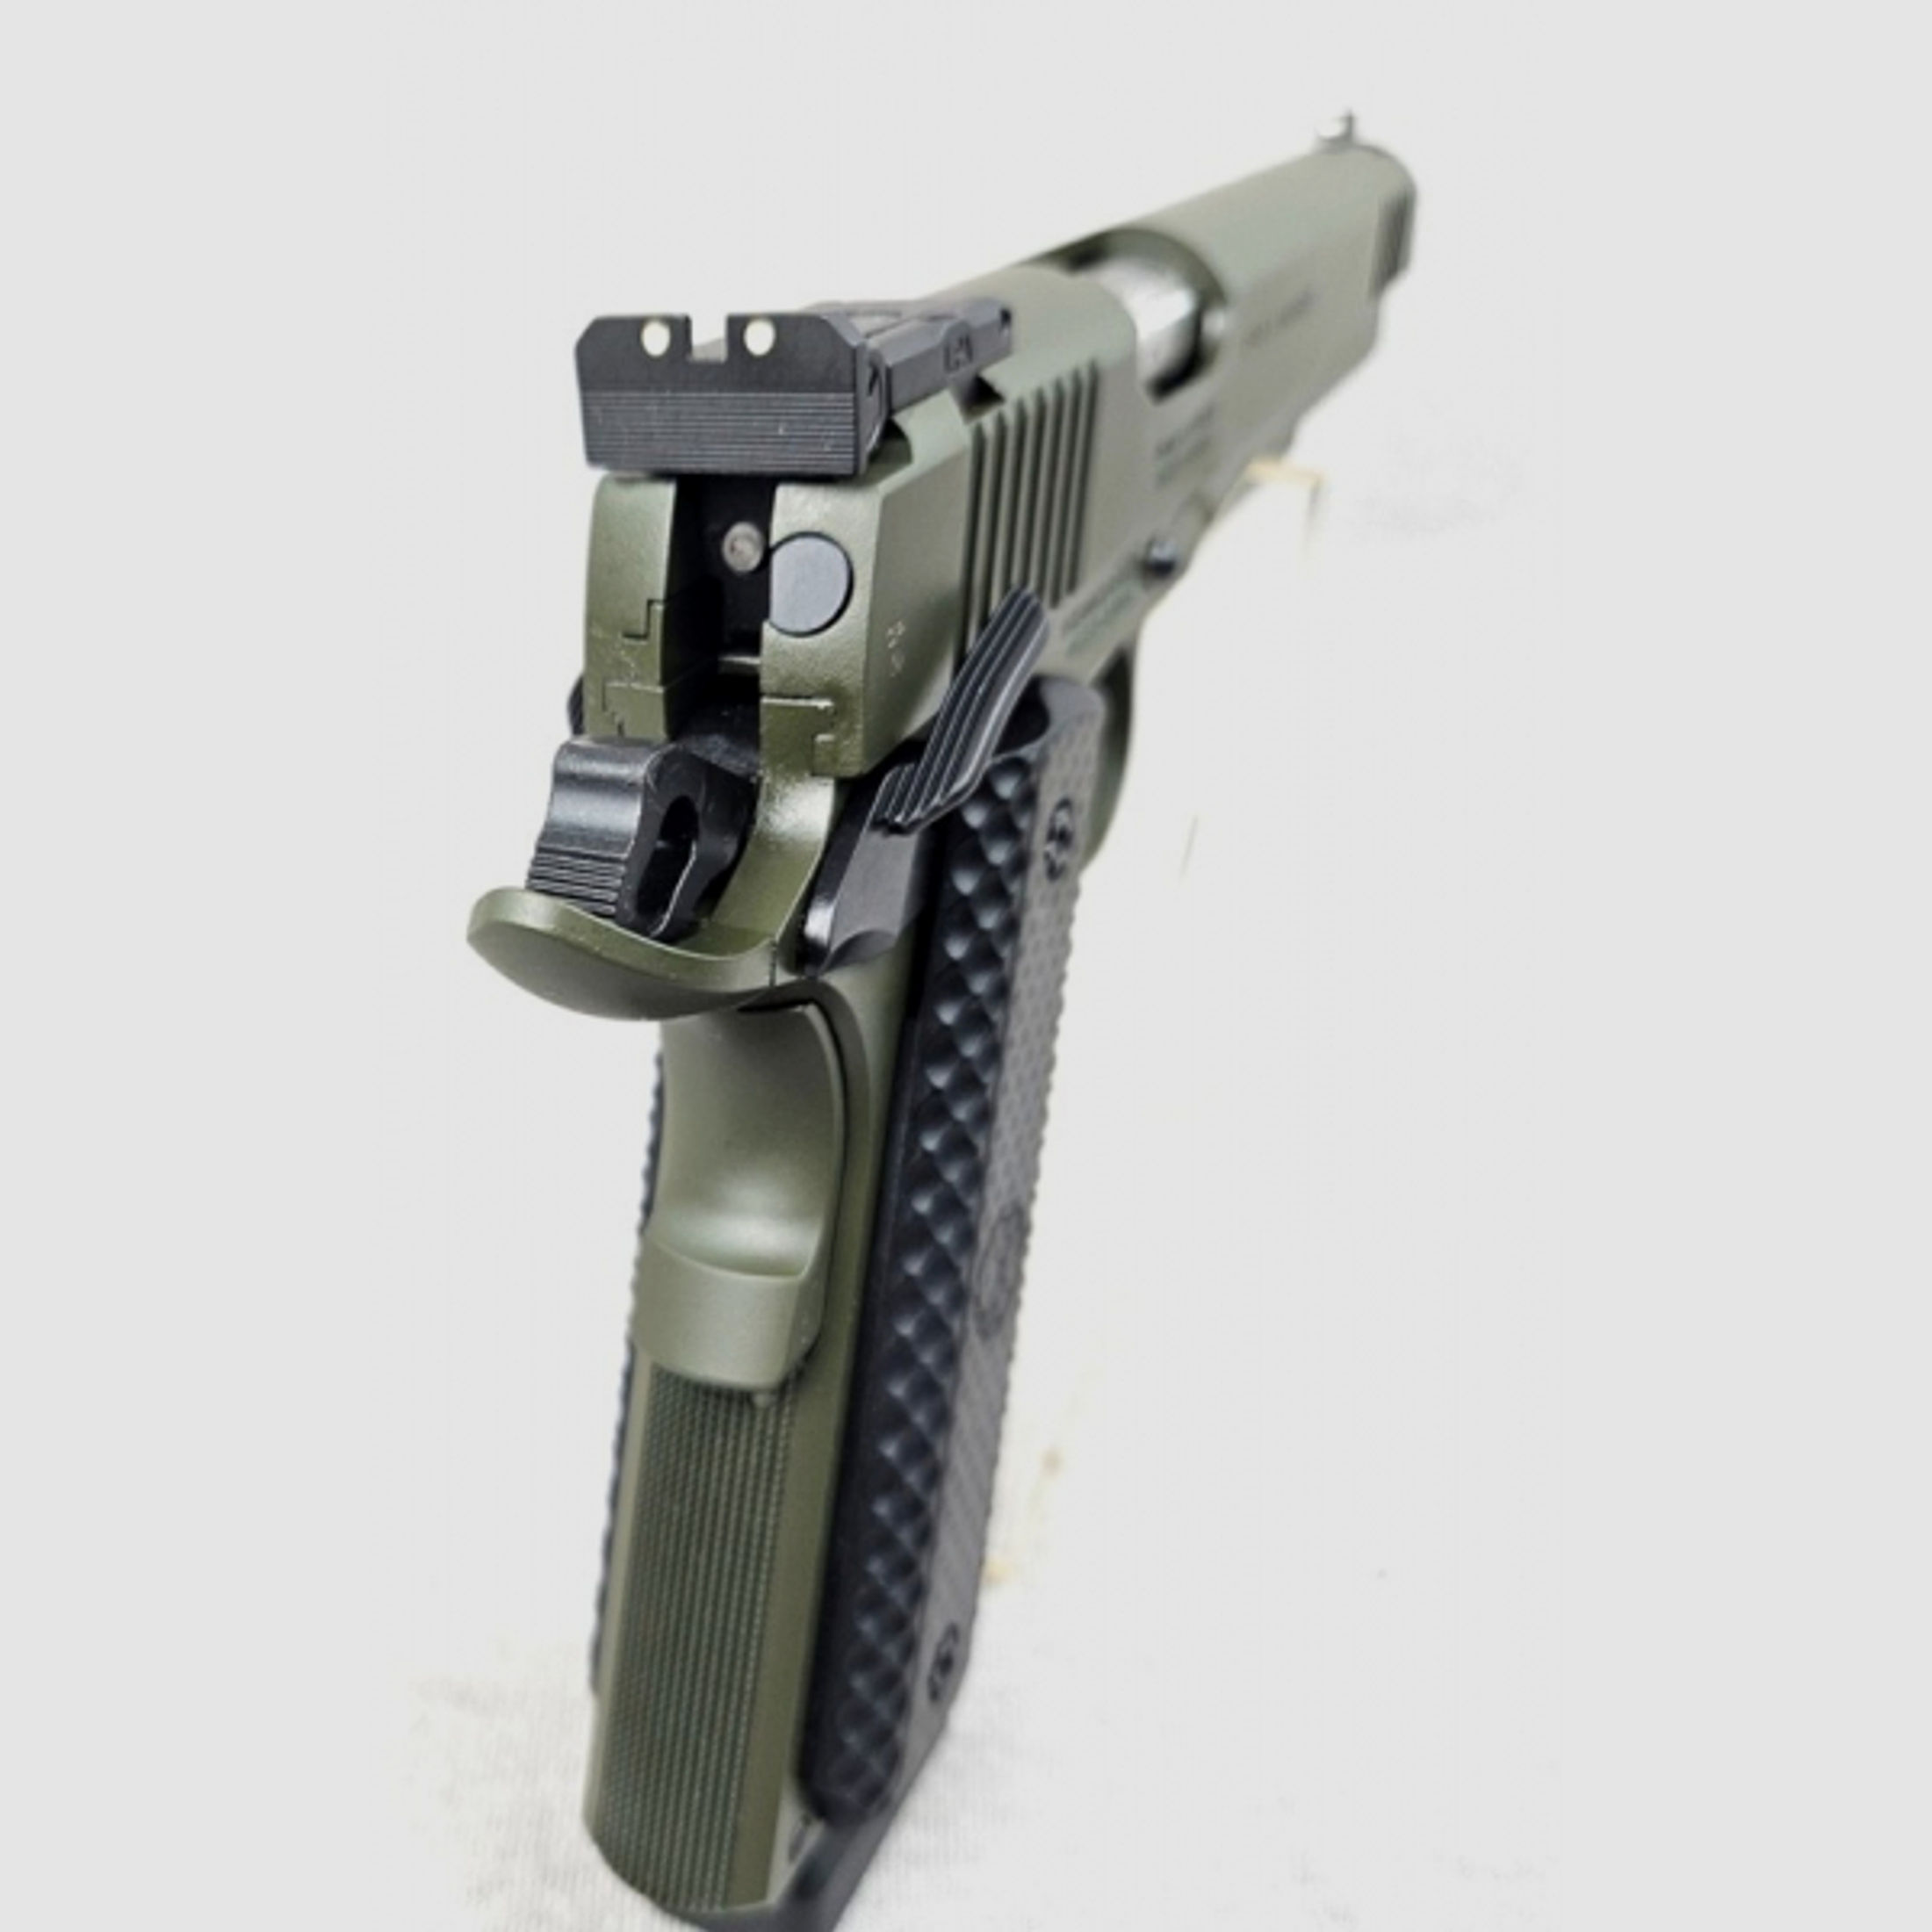 Pistole, Schmeisser, 1911 HUGO - OD GREEN, 9mm Luger, 5 Ersatzmagazine